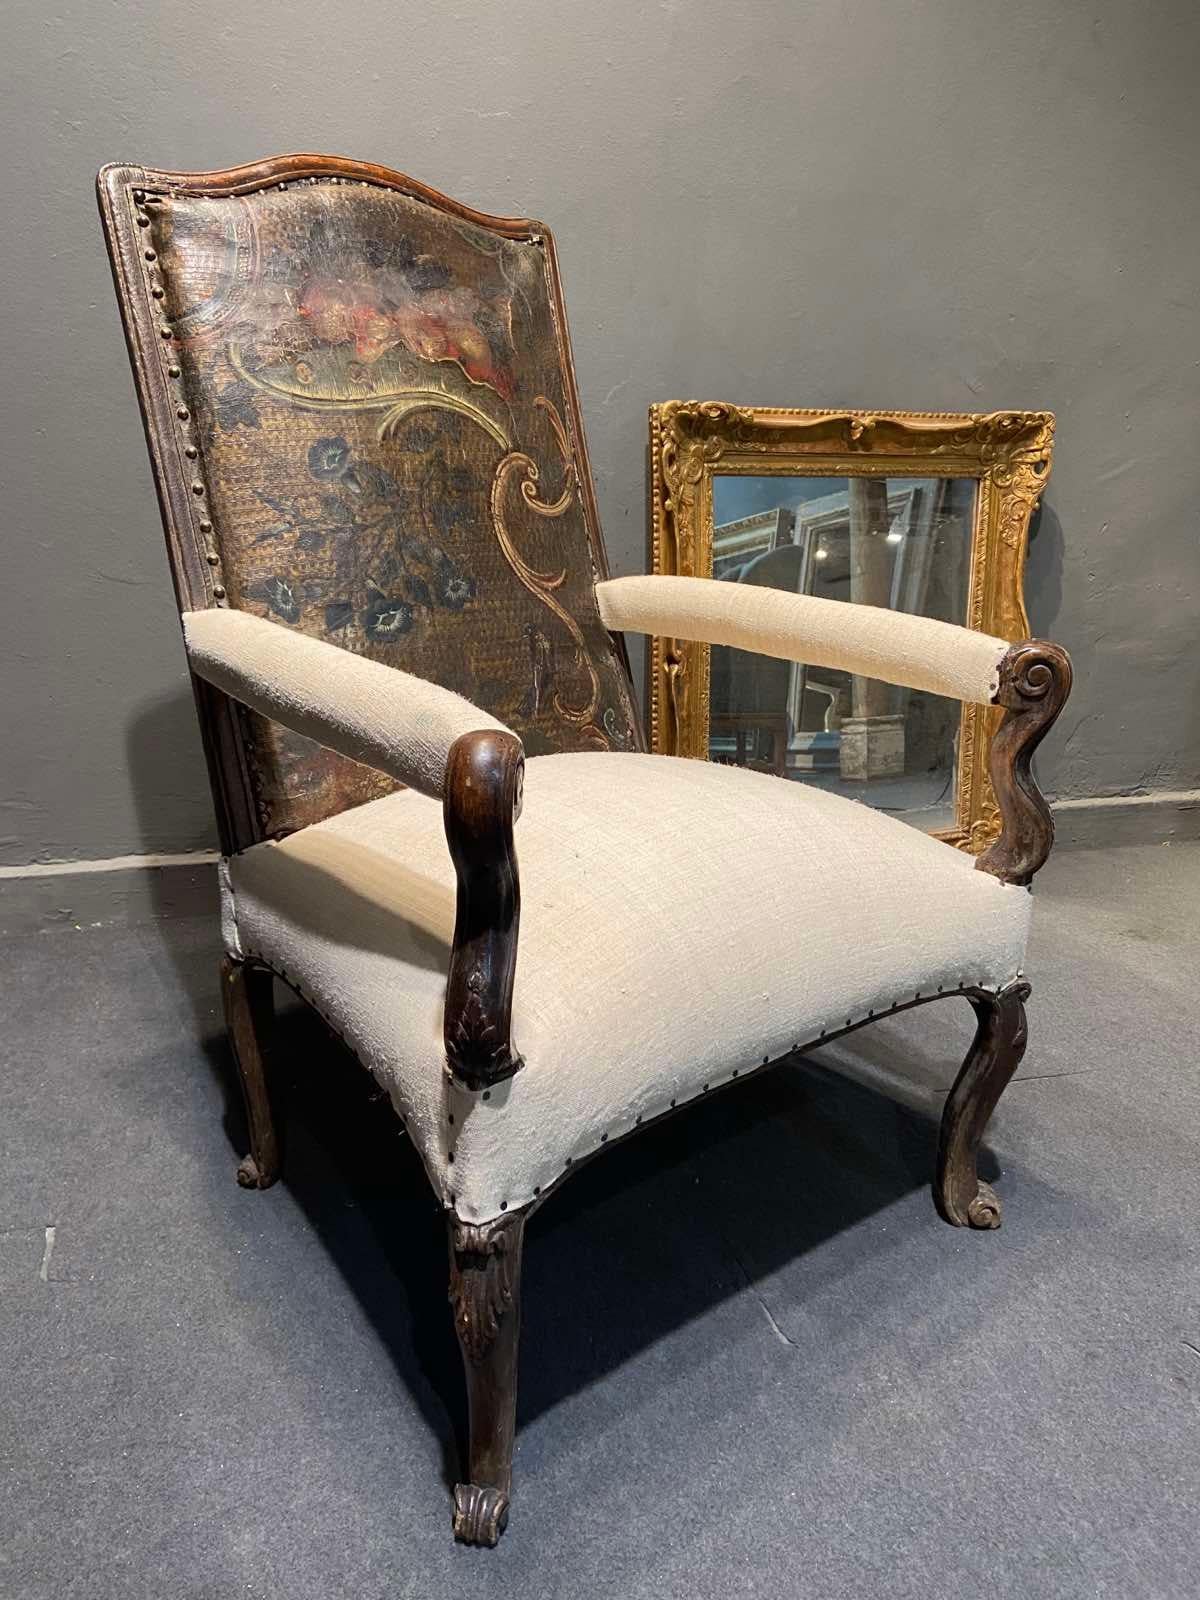 Sessel mit hoher Rückenlehne aus geformtem und geschnitztem Holz, geschwungenen Rollbeinen, Sitz und Armlehne gepolstert mit beigem Leinen und Rückenlehne aus authentischem Cordoba-Leder, teilweise aus der Zeit Ludwigs XV.
Französisch, um 1790.